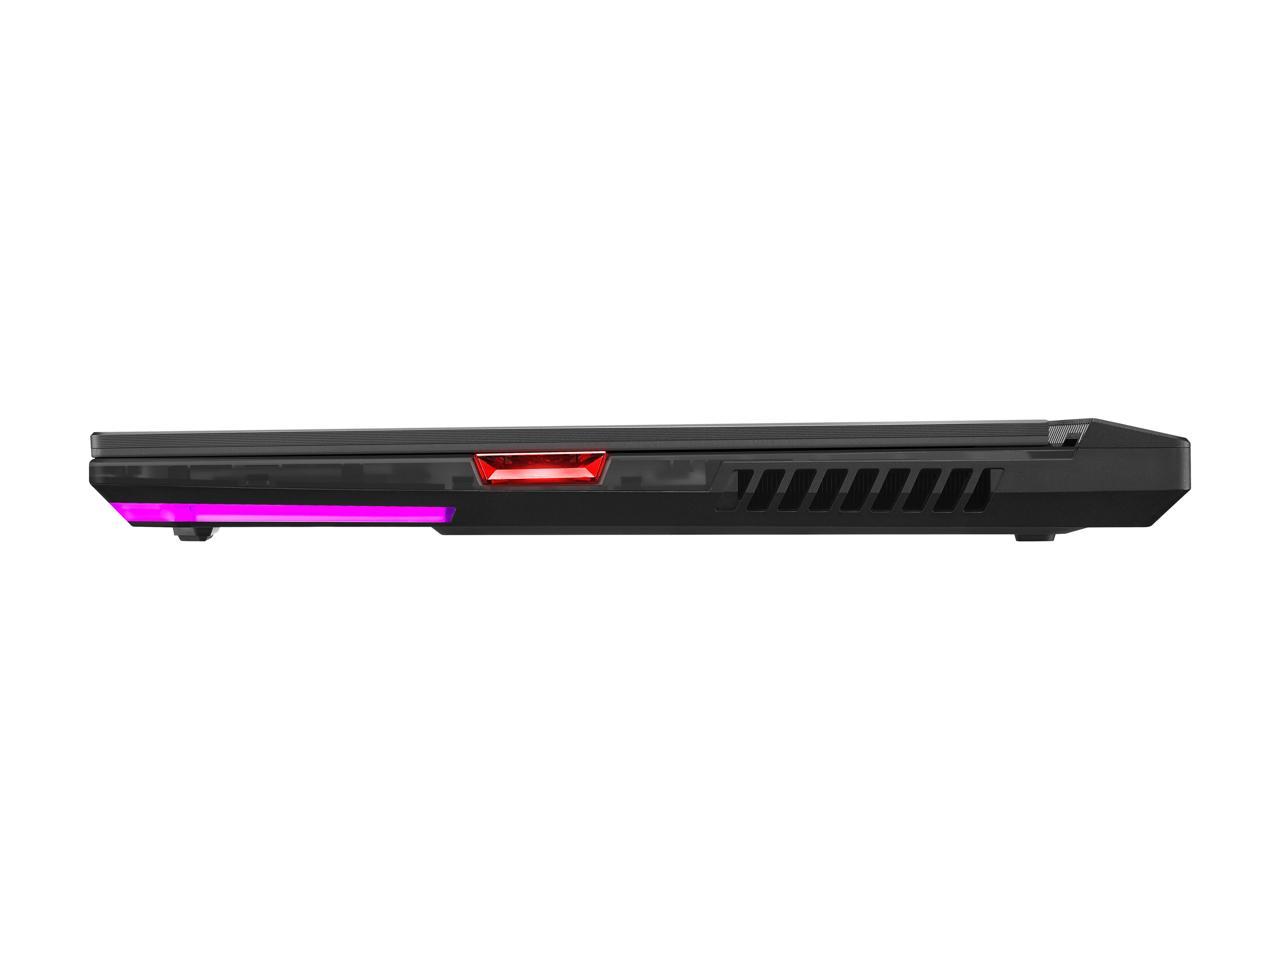 Asus Rog Strix Scar 15 (2021) Gaming Laptop, 15.6" 300Hz Ips Type Fhd, Nvidia Geforce Rtx 3080